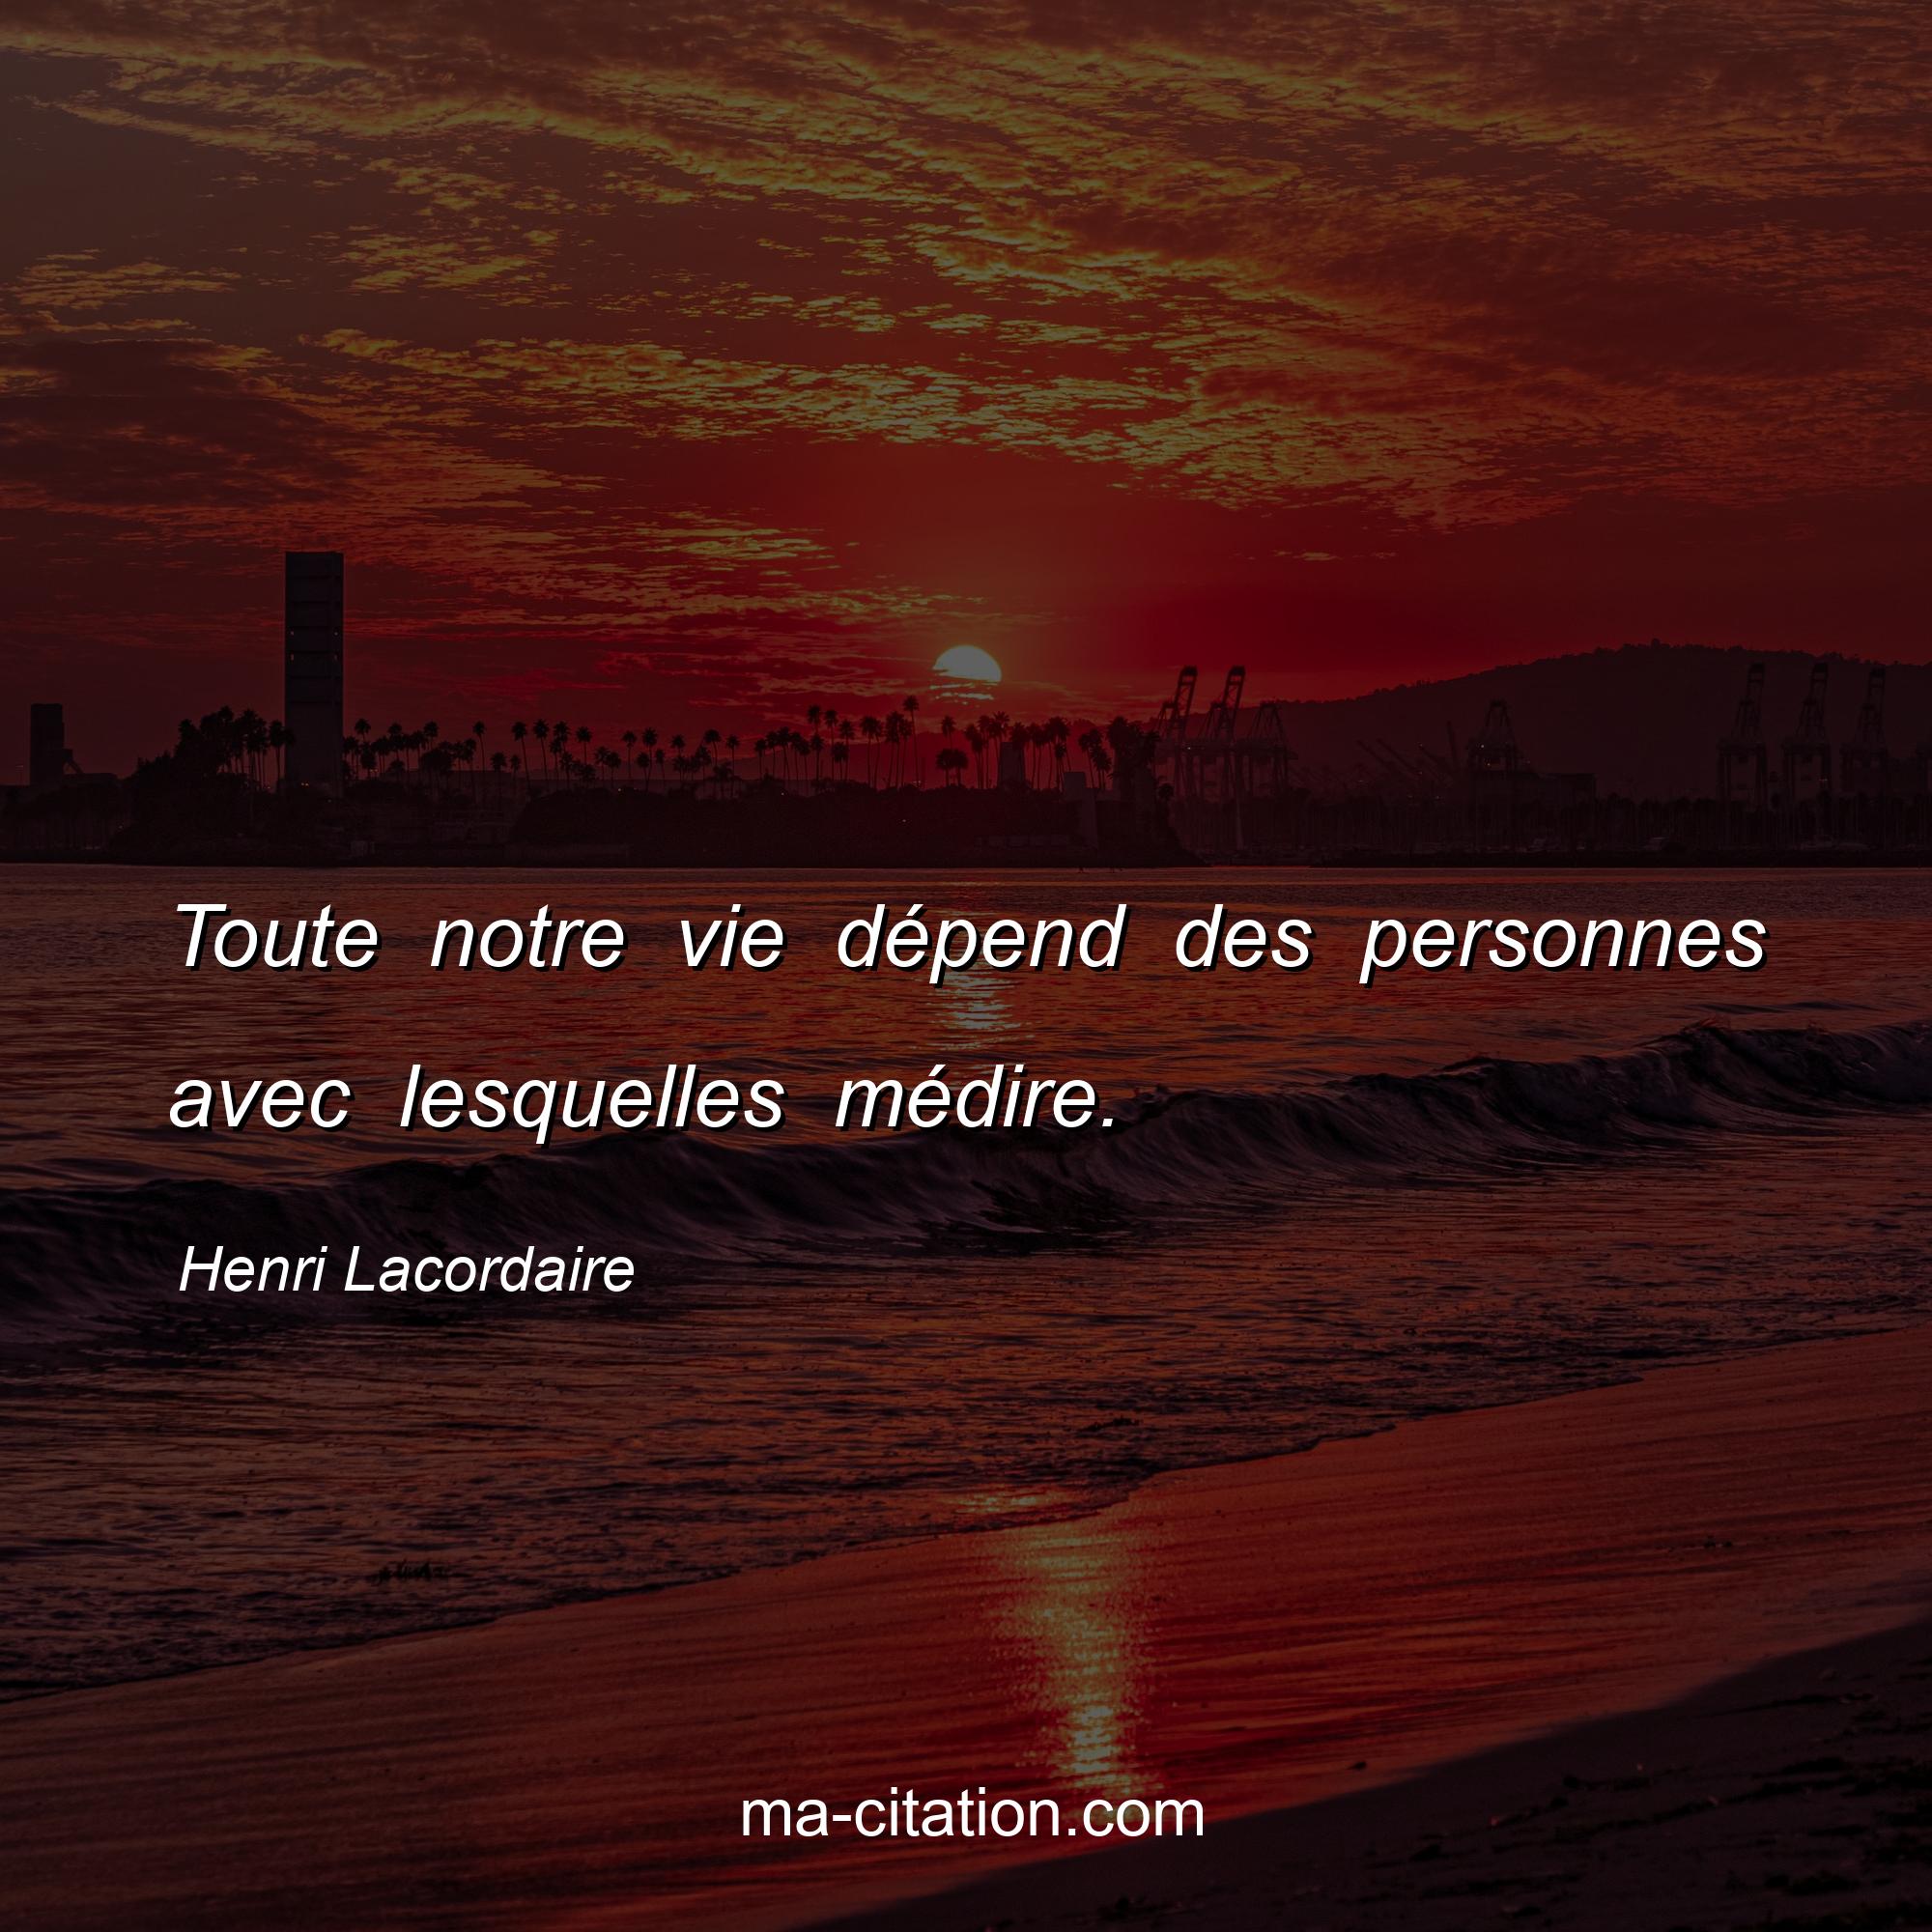 Henri Lacordaire : Toute notre vie dépend des personnes avec lesquelles médire.